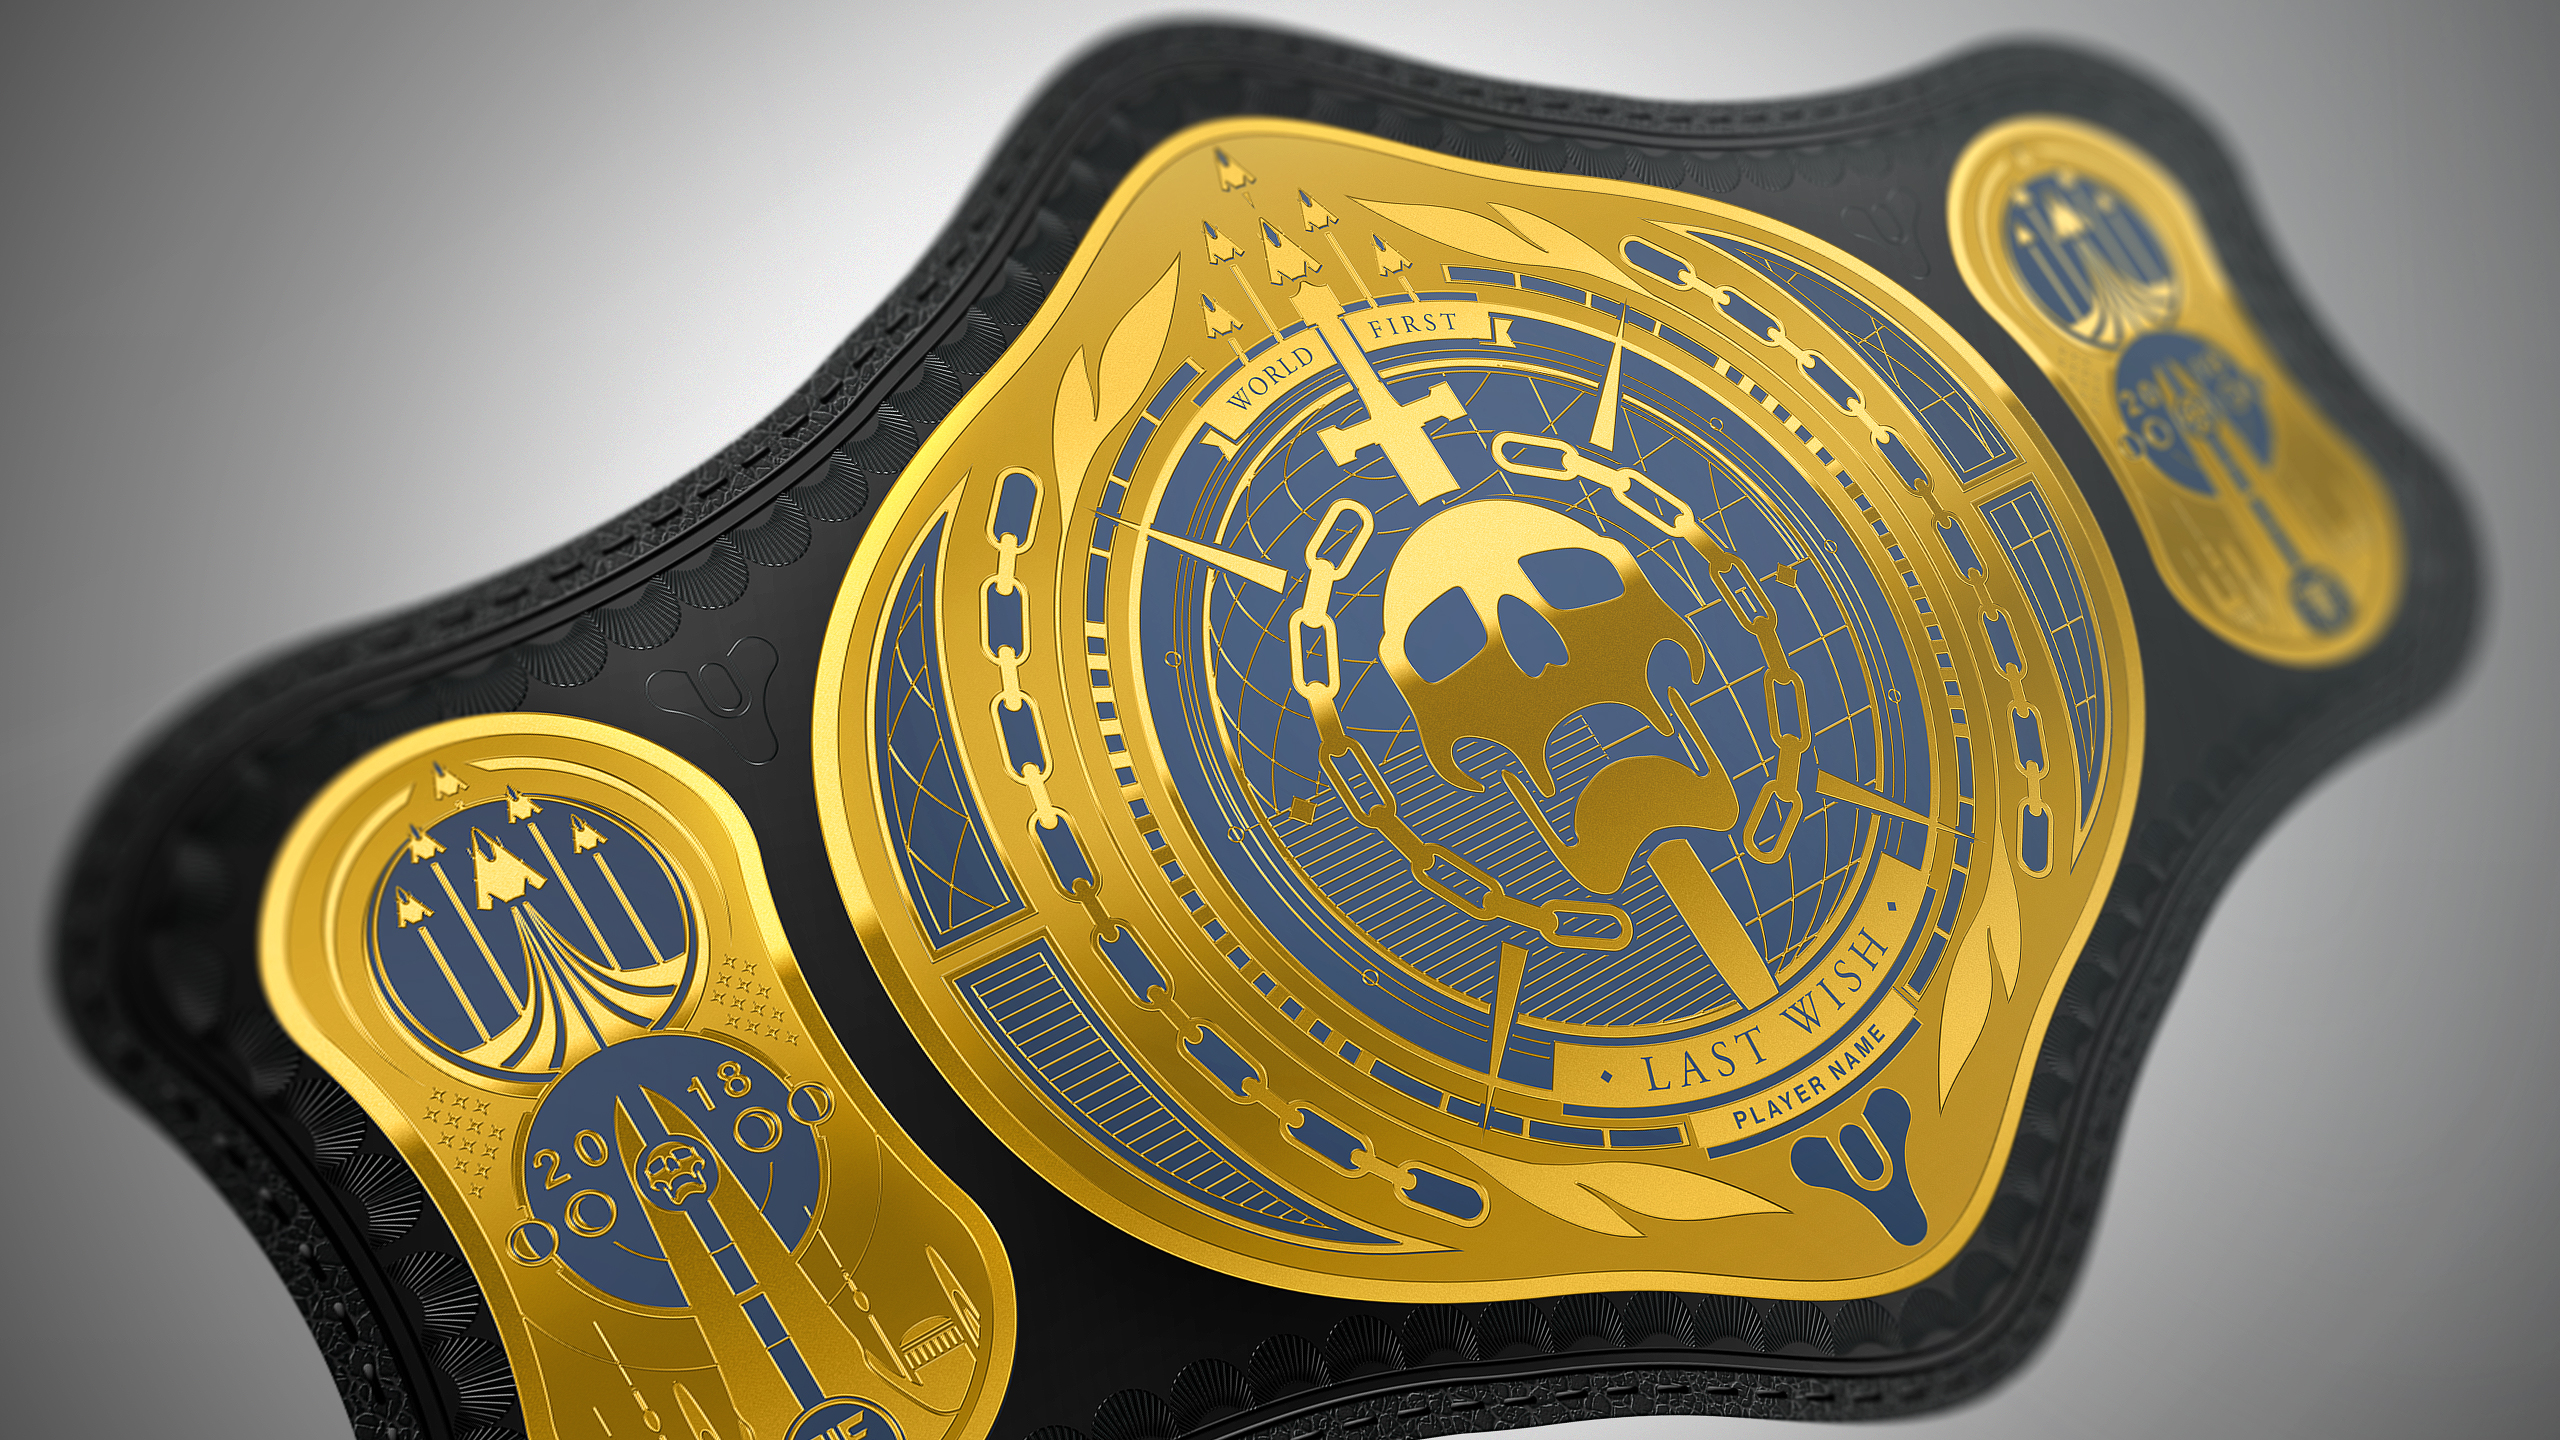 World First Title Belt